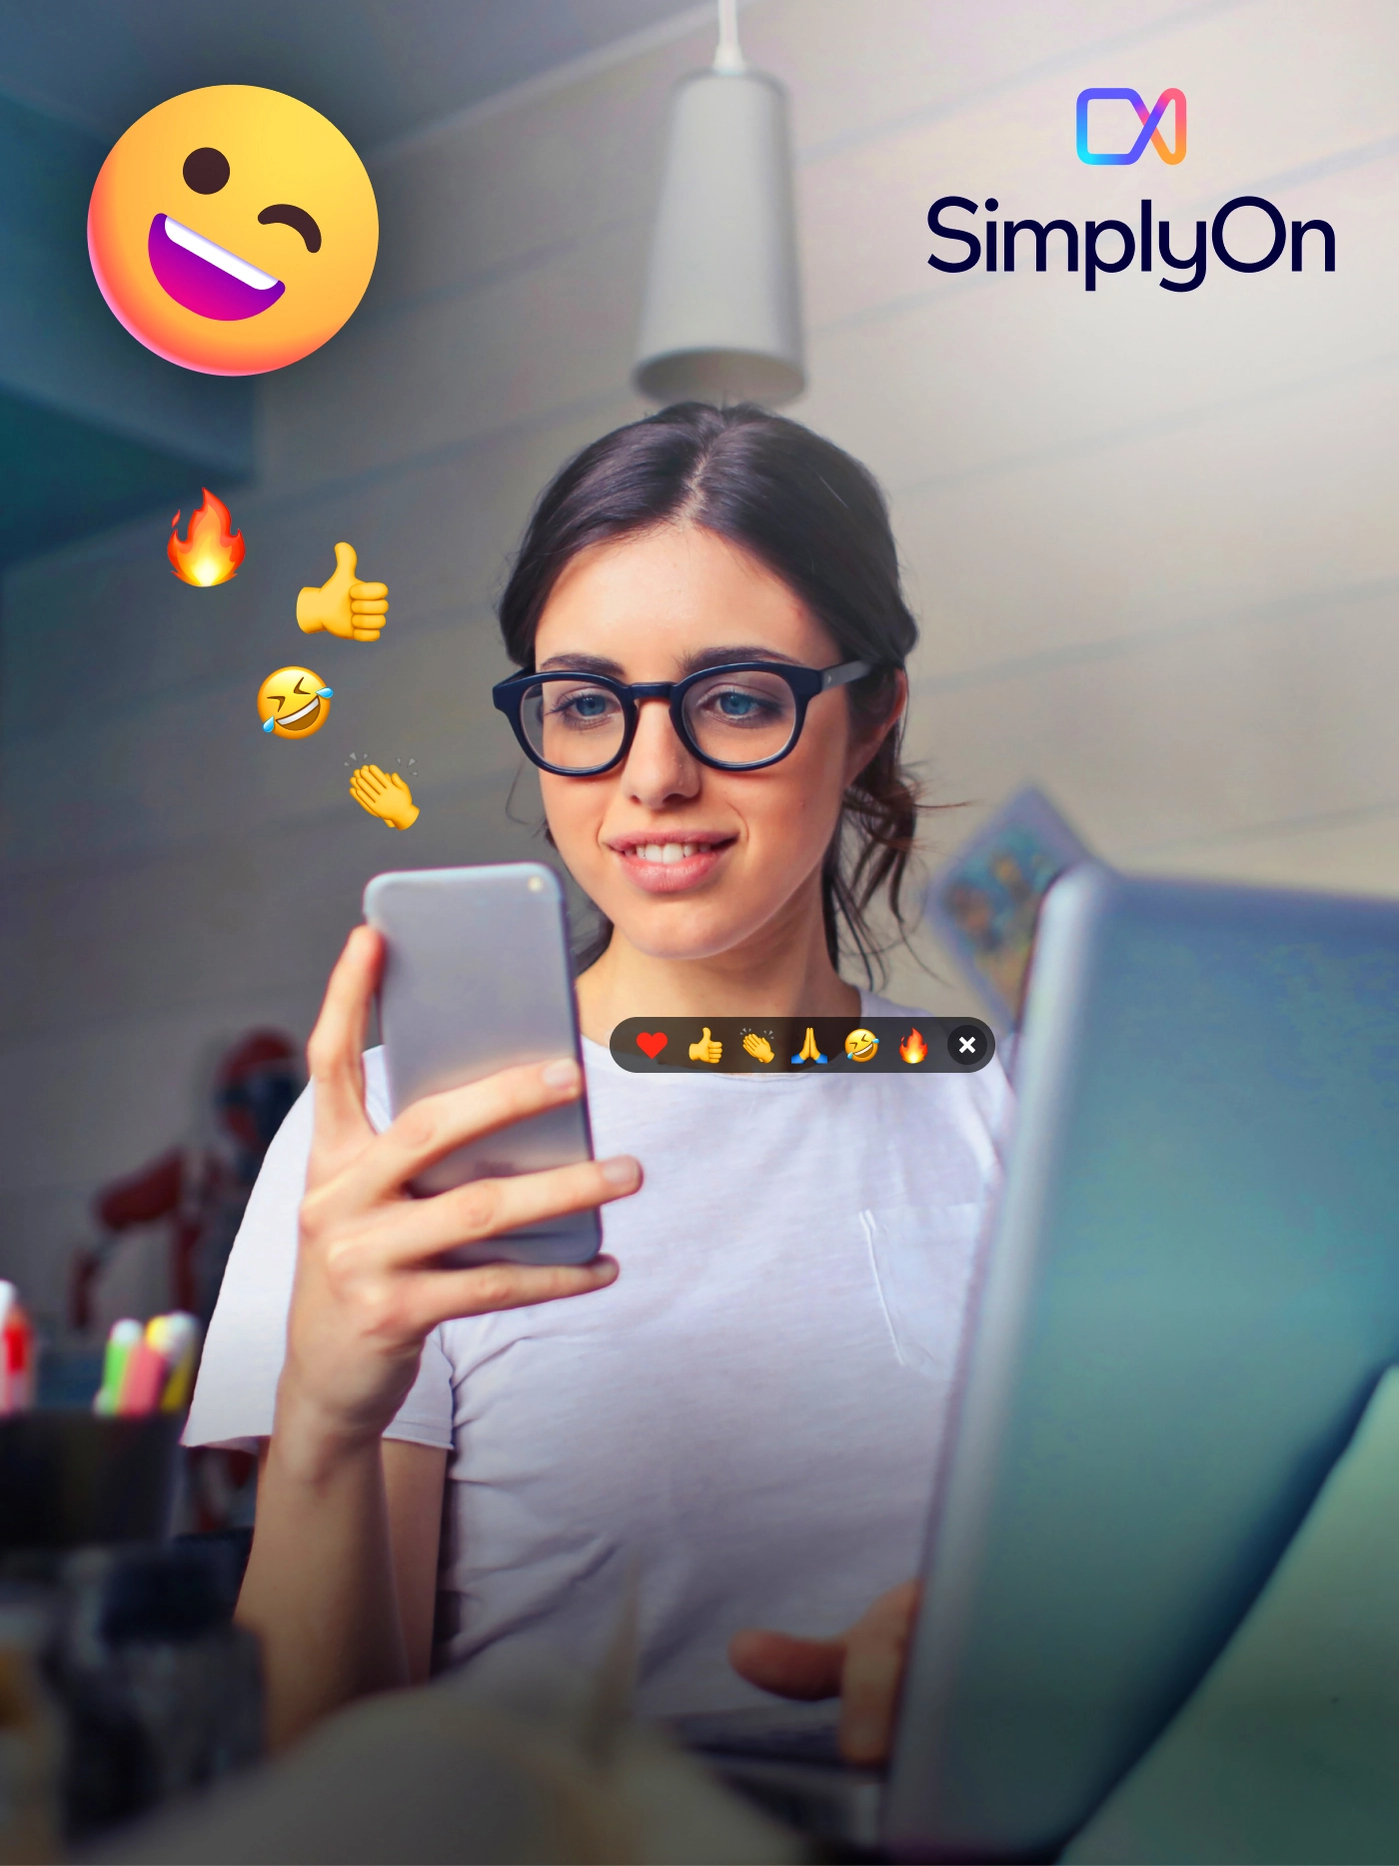 simplyon-video-call-emojis-bg-image-portrait